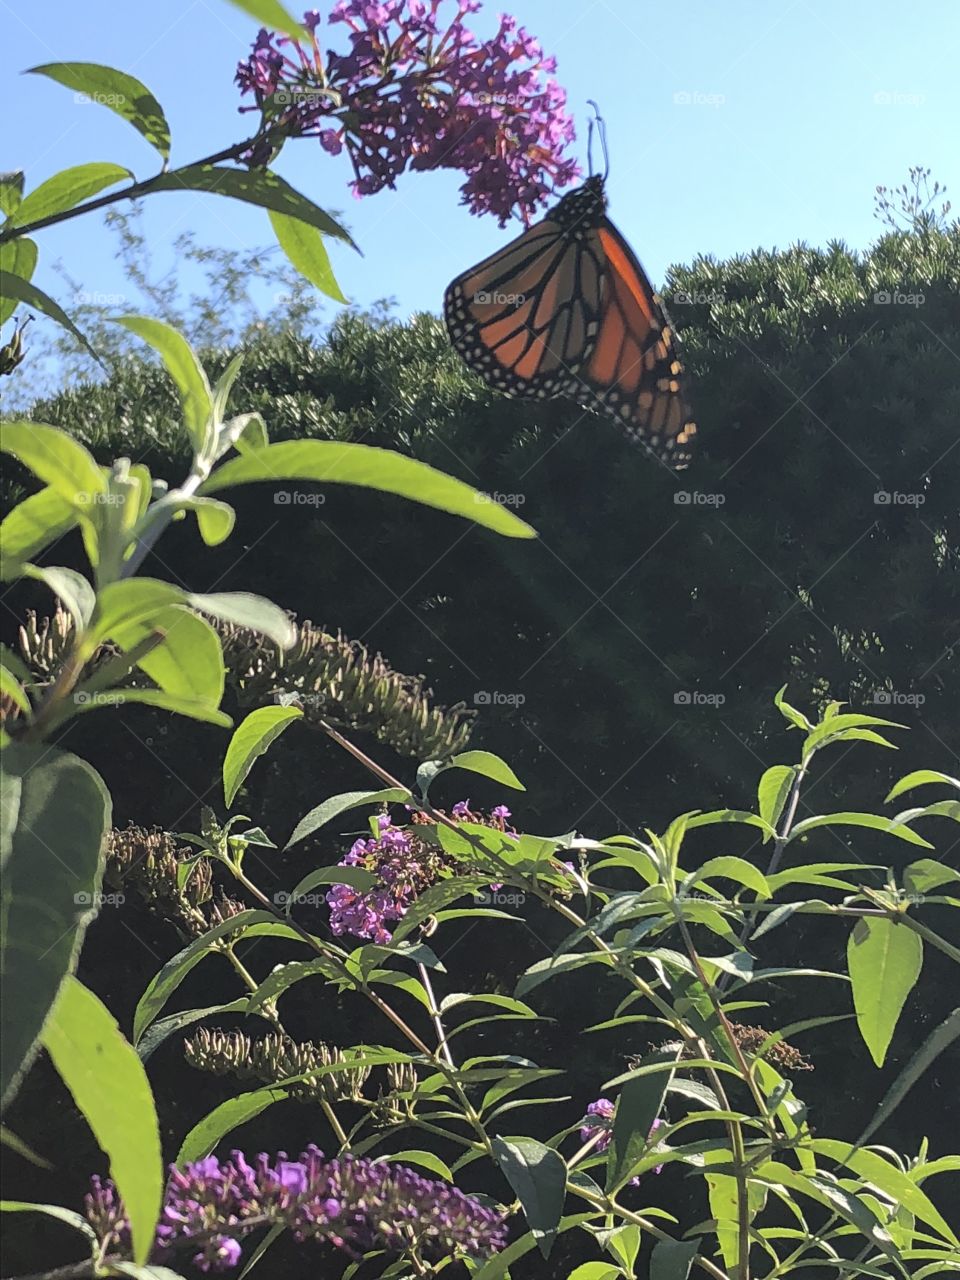 Butterfly on a bush